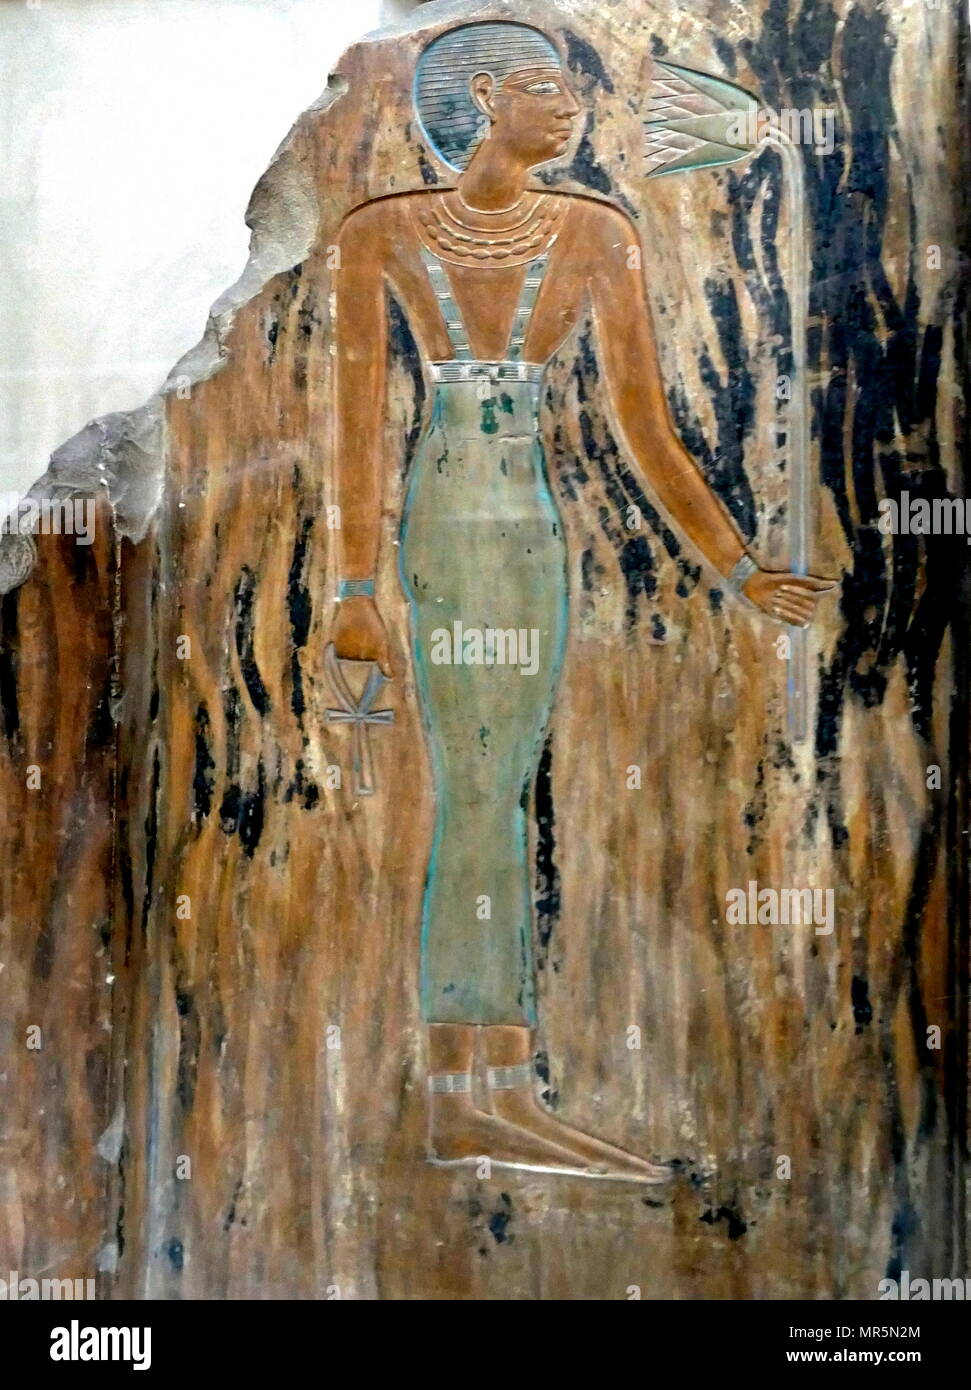 In calcare dipinto a rilievo, dal Santuario della Principessa Ashayt, una delle mogli del re Mentuhotep II, il fondatore della XI dinastia. Ha tenuto numerosi titoli come: re della moglie amata e sacerdotessa di Hathor. Regno di mezzo; XI dinastia; Deir Bahari, Tempio di Nebhepetre Mentuhotep II (regnò c. 2061 BC - 2010 BC) era un faraone della XI dinastia che regnò per 51 anni. Intorno alla sua XXXIX anno sul trono egli riunita Egitto, chiudendo così il primo periodo intermedio. Di conseguenza, egli è considerato il primo faraone del Regno di Mezzo. Foto Stock